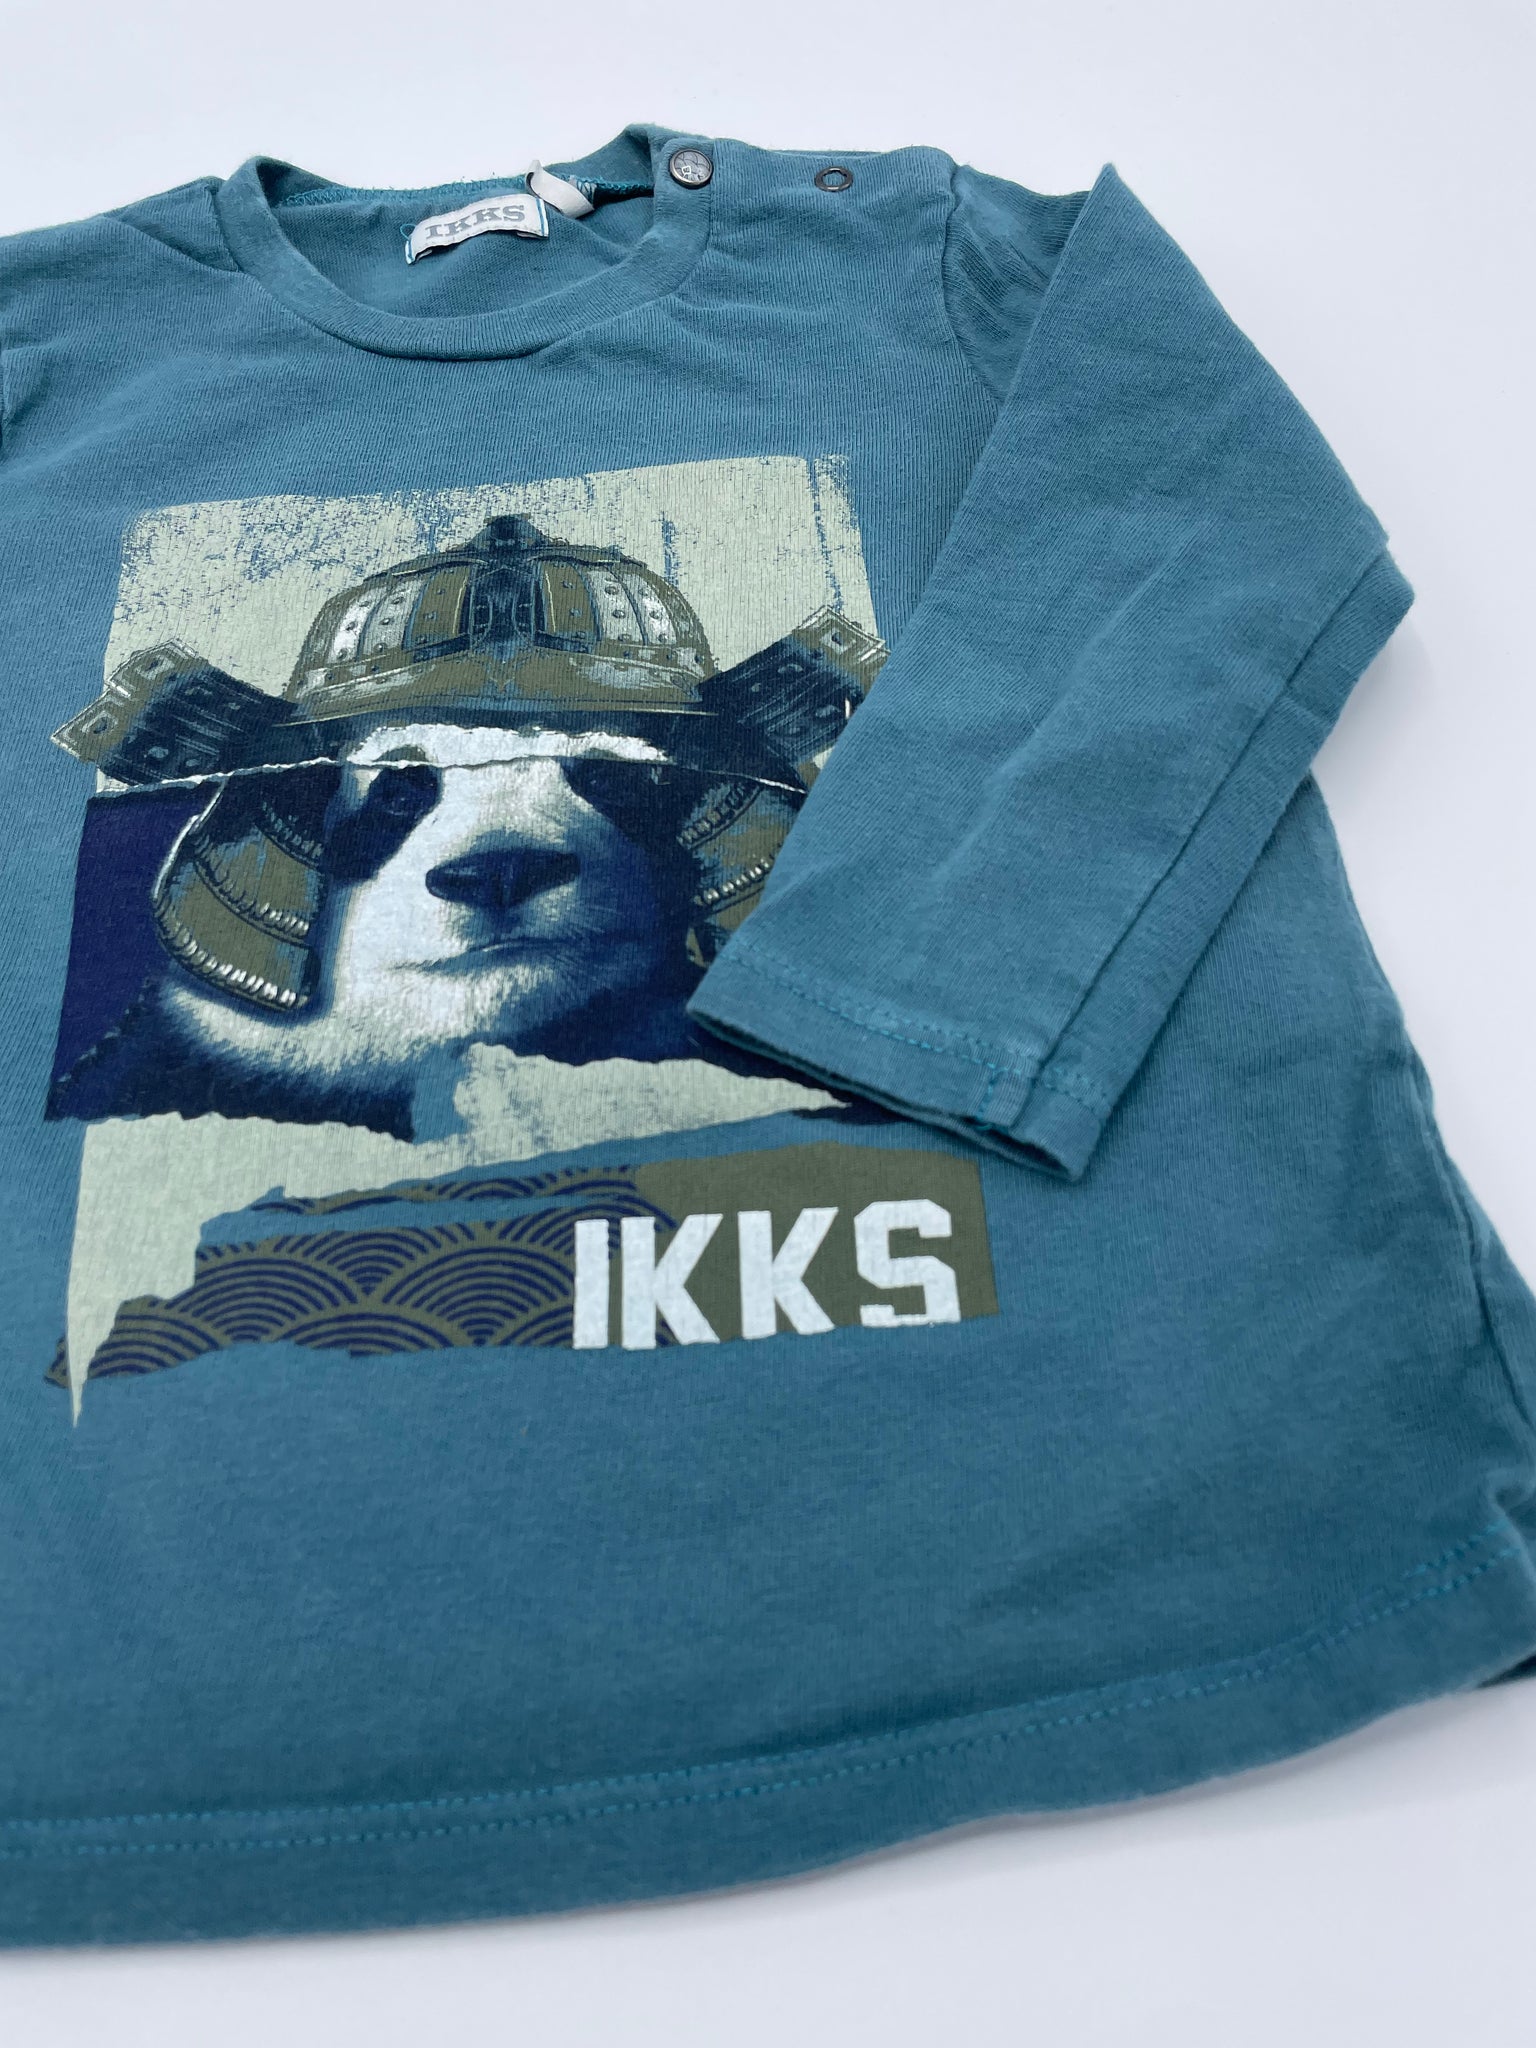 T-shirt IKKS 2 ans 86 cm